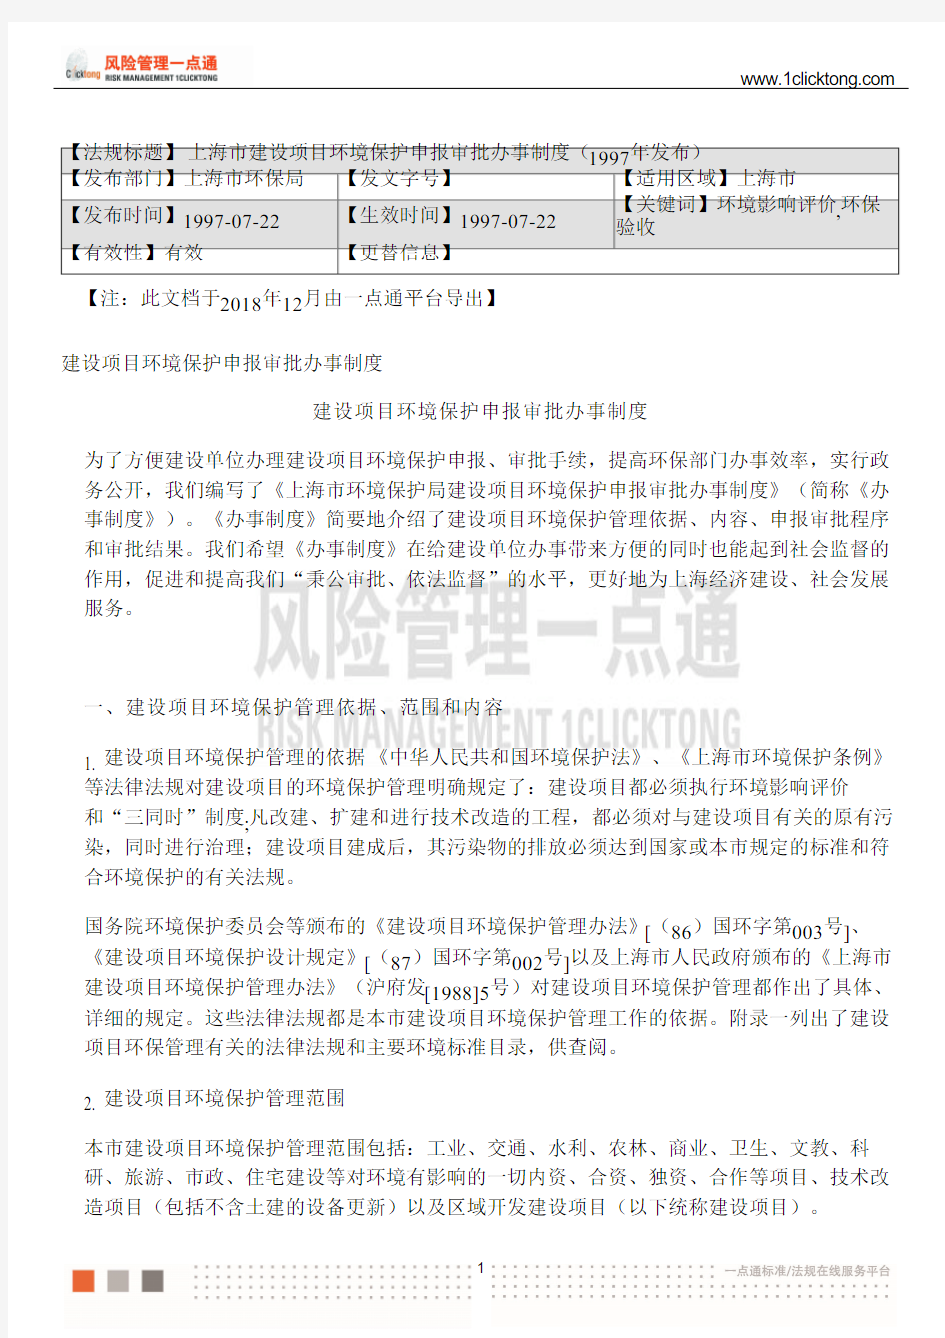 上海市建设项目环境保护申报审批办事制度(1997年发布)